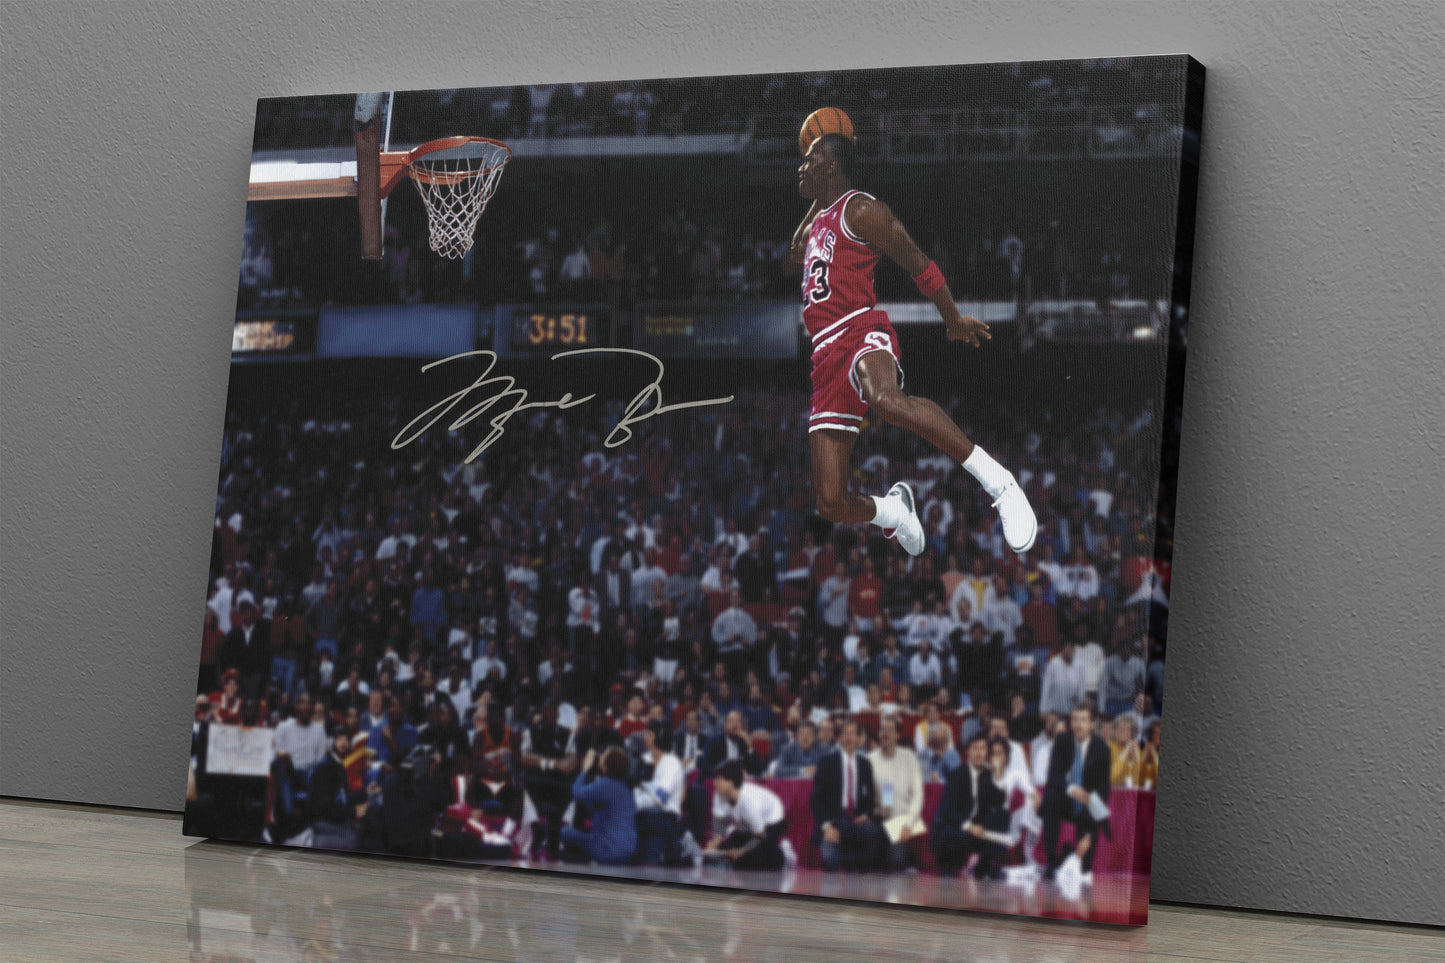 Jordan Poster Slam Dunk with Sign Canvas Wall Art Home Decor Framed Art